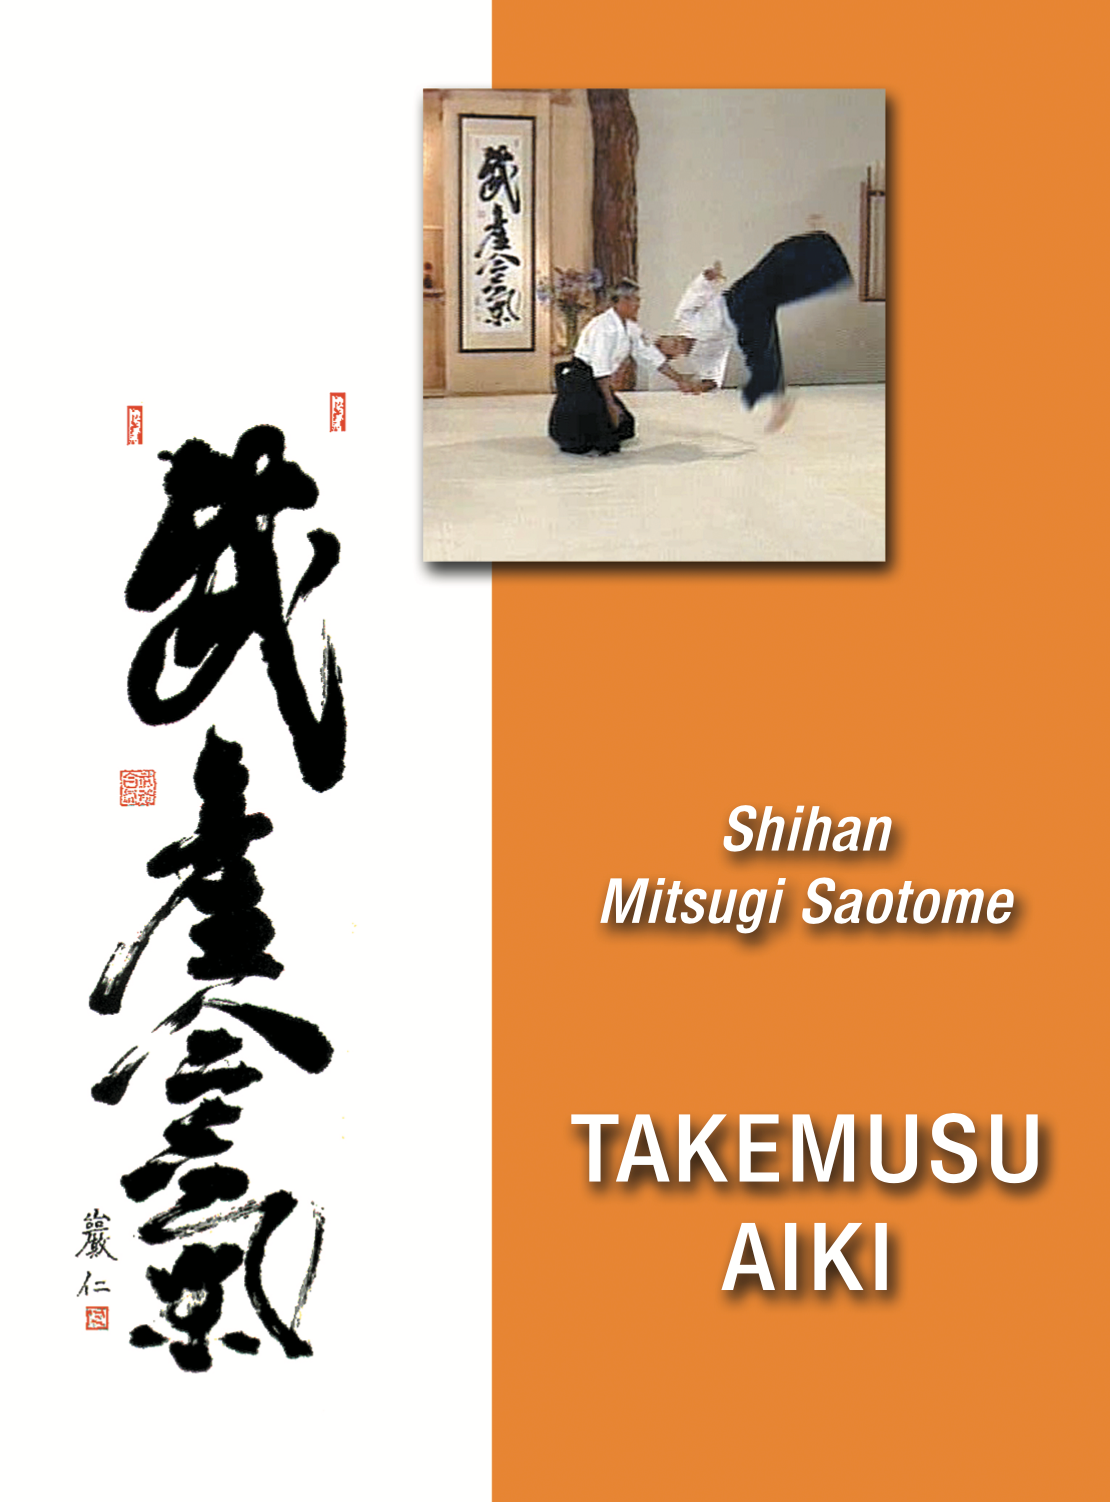 Takemusu Aiki DVD by Mitsugi Saotome